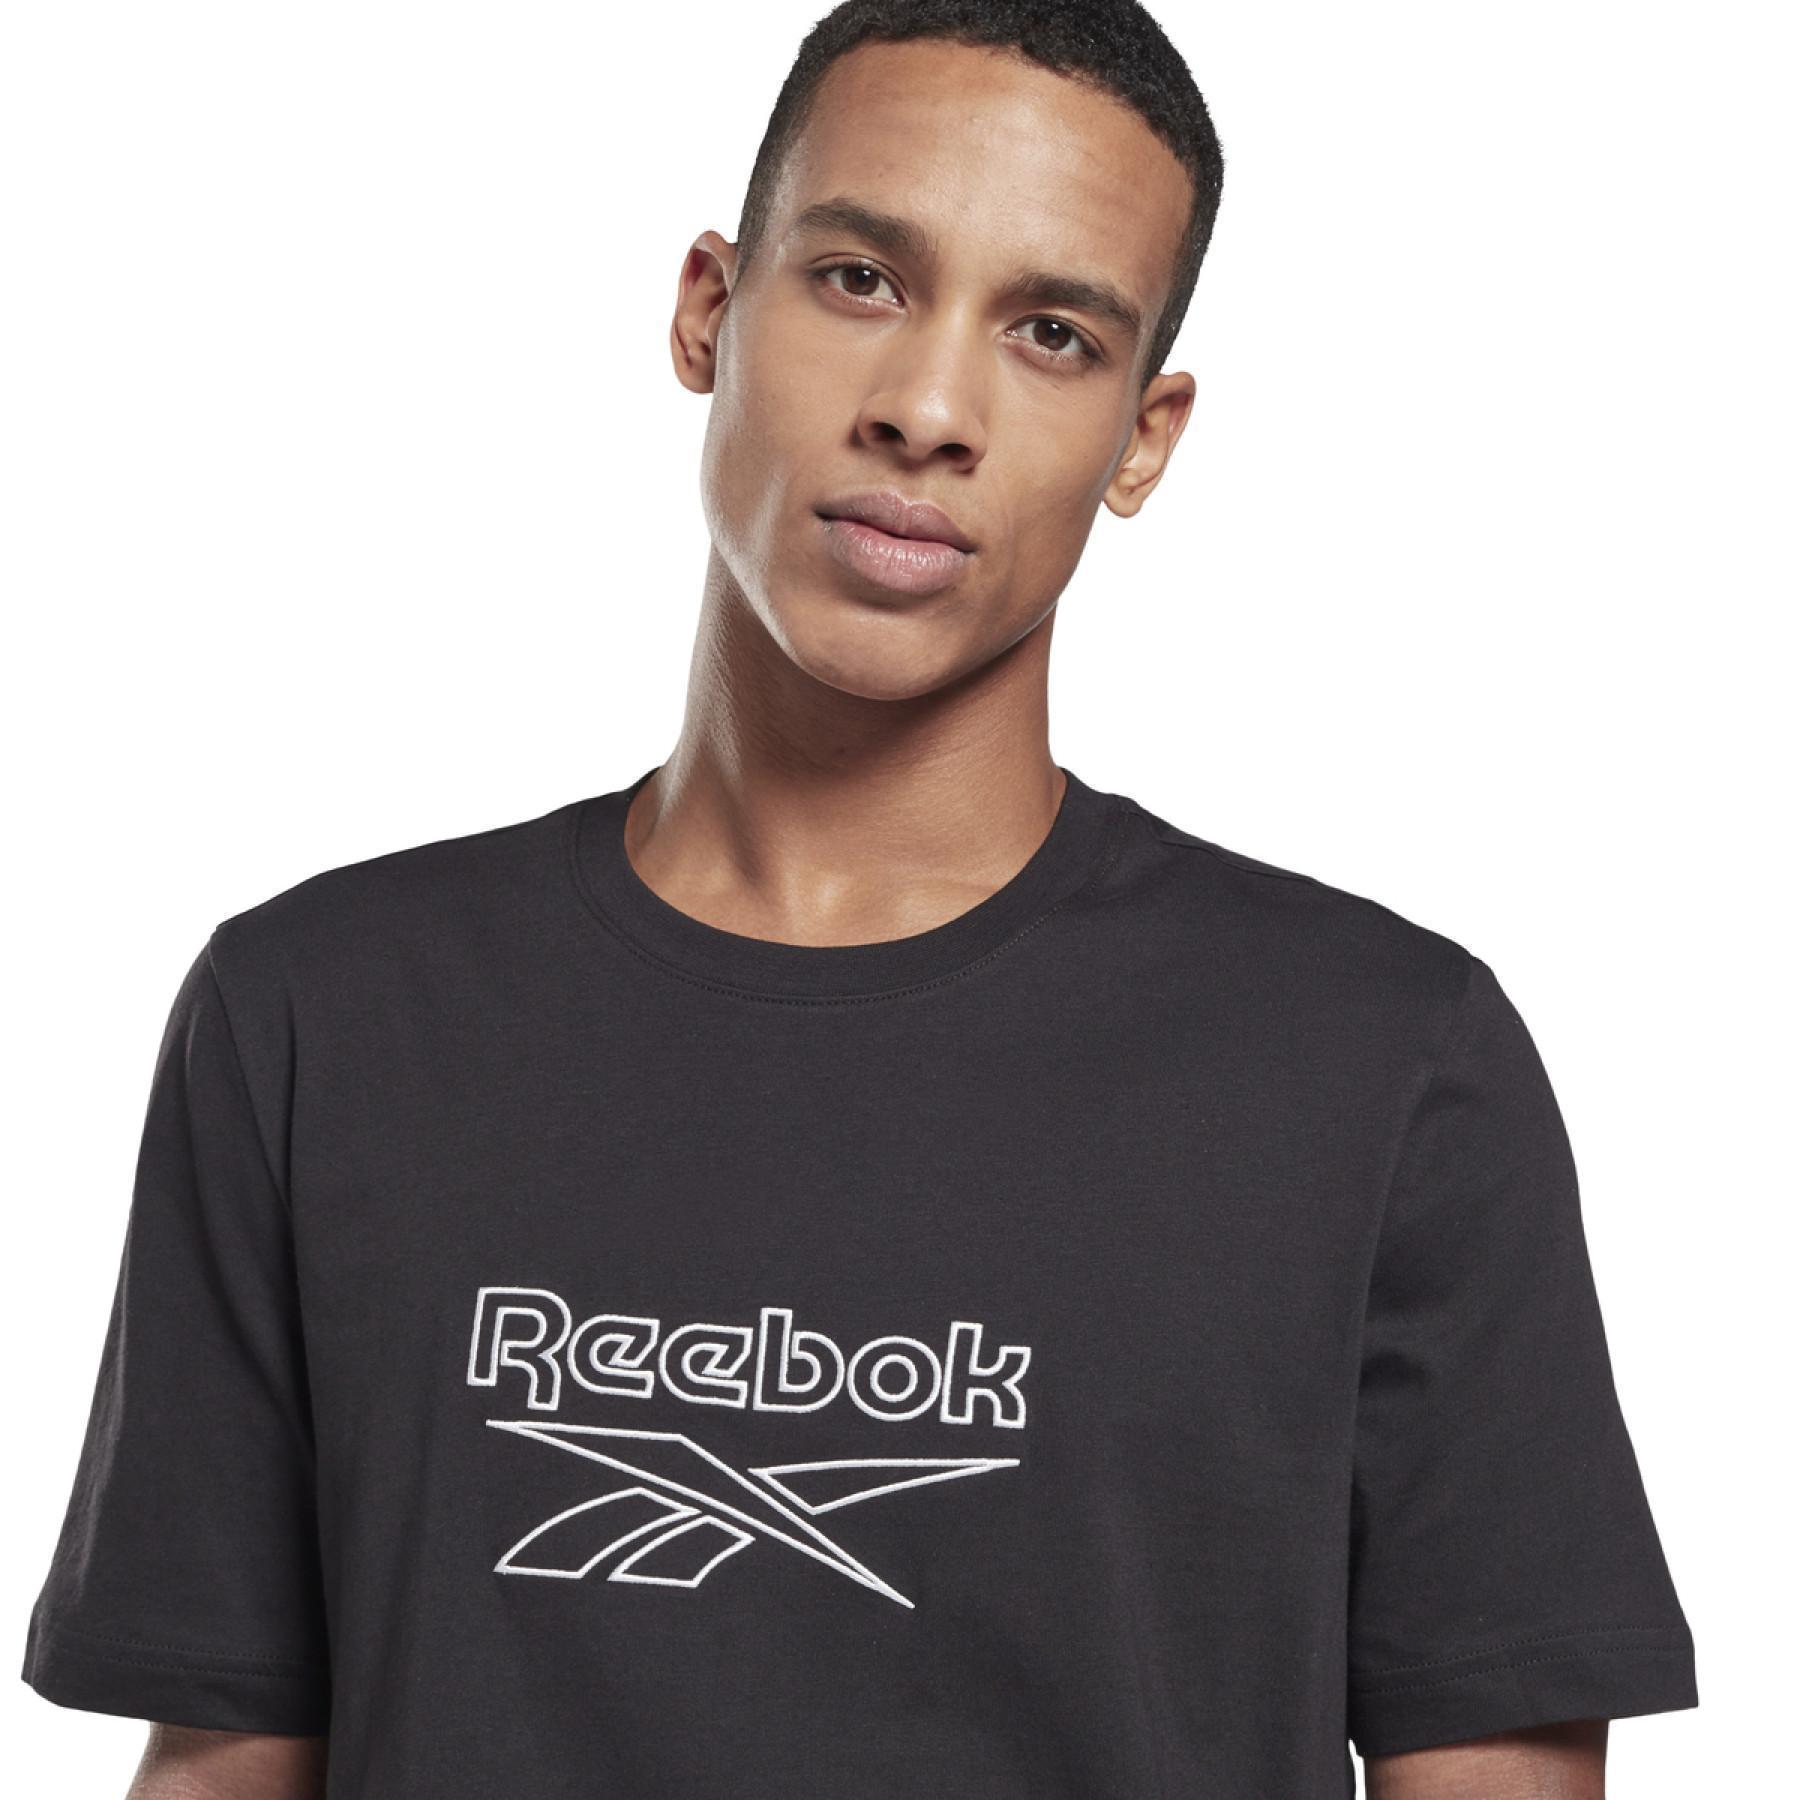 T-shirt Reebok Classics Vector